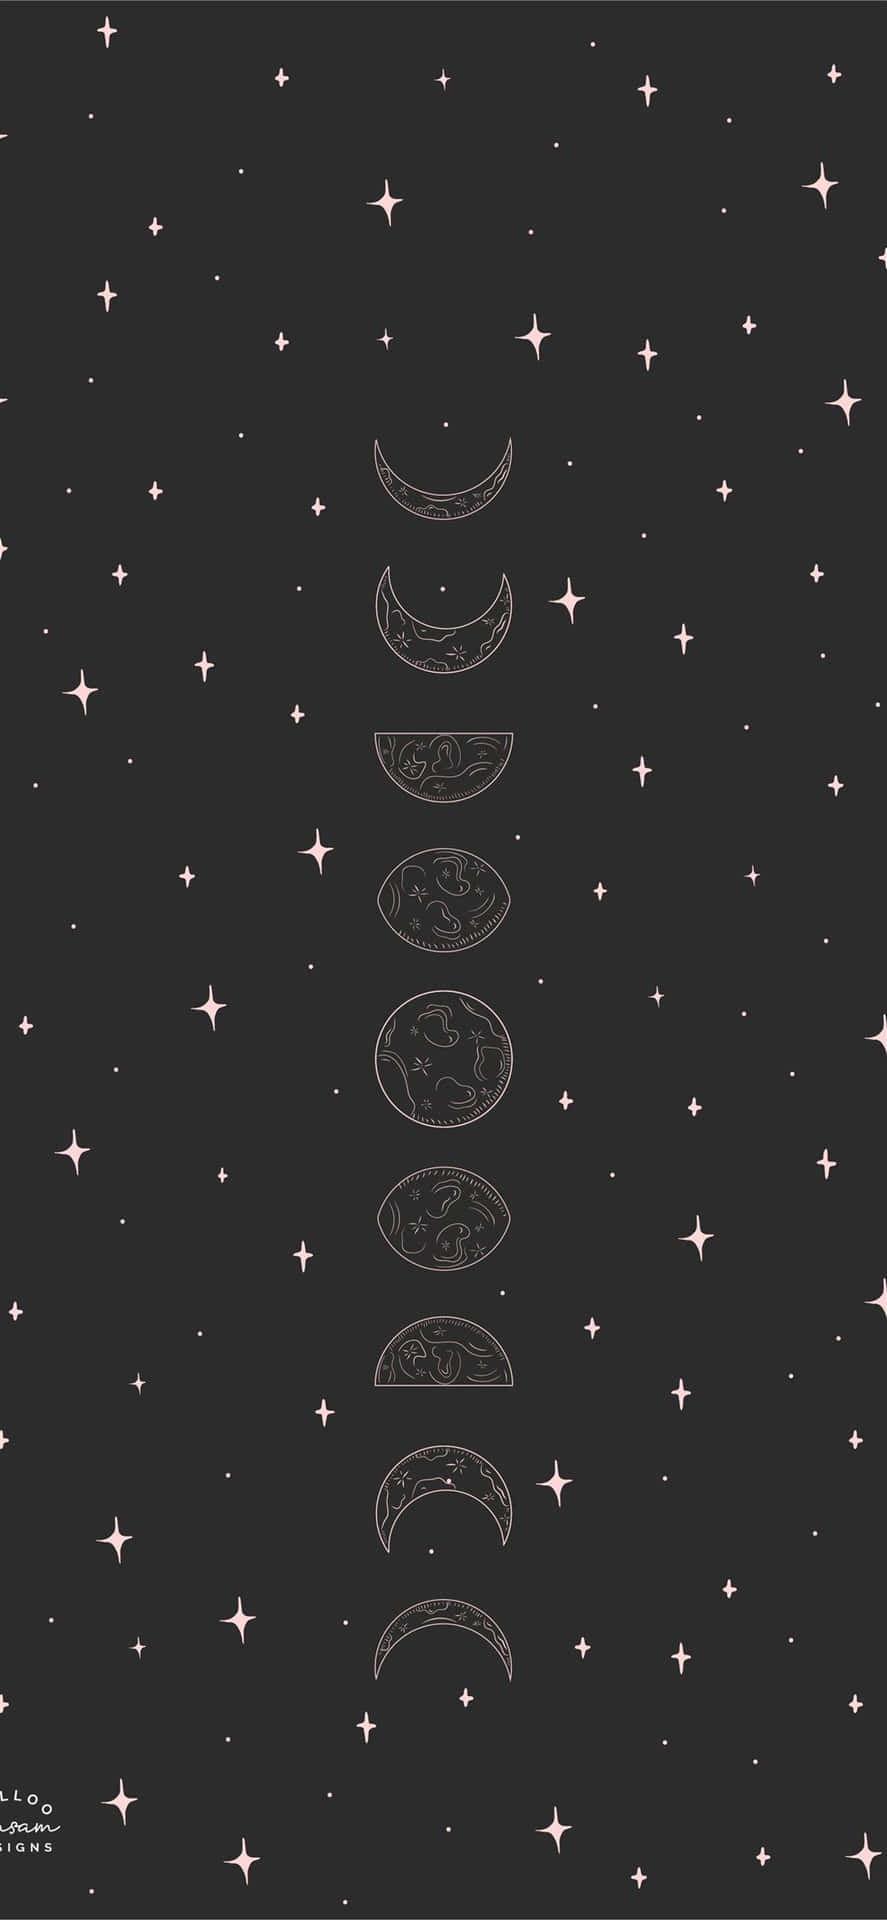 Einschwarzer Hintergrund Mit Sternen Und Mondphasen. Wallpaper